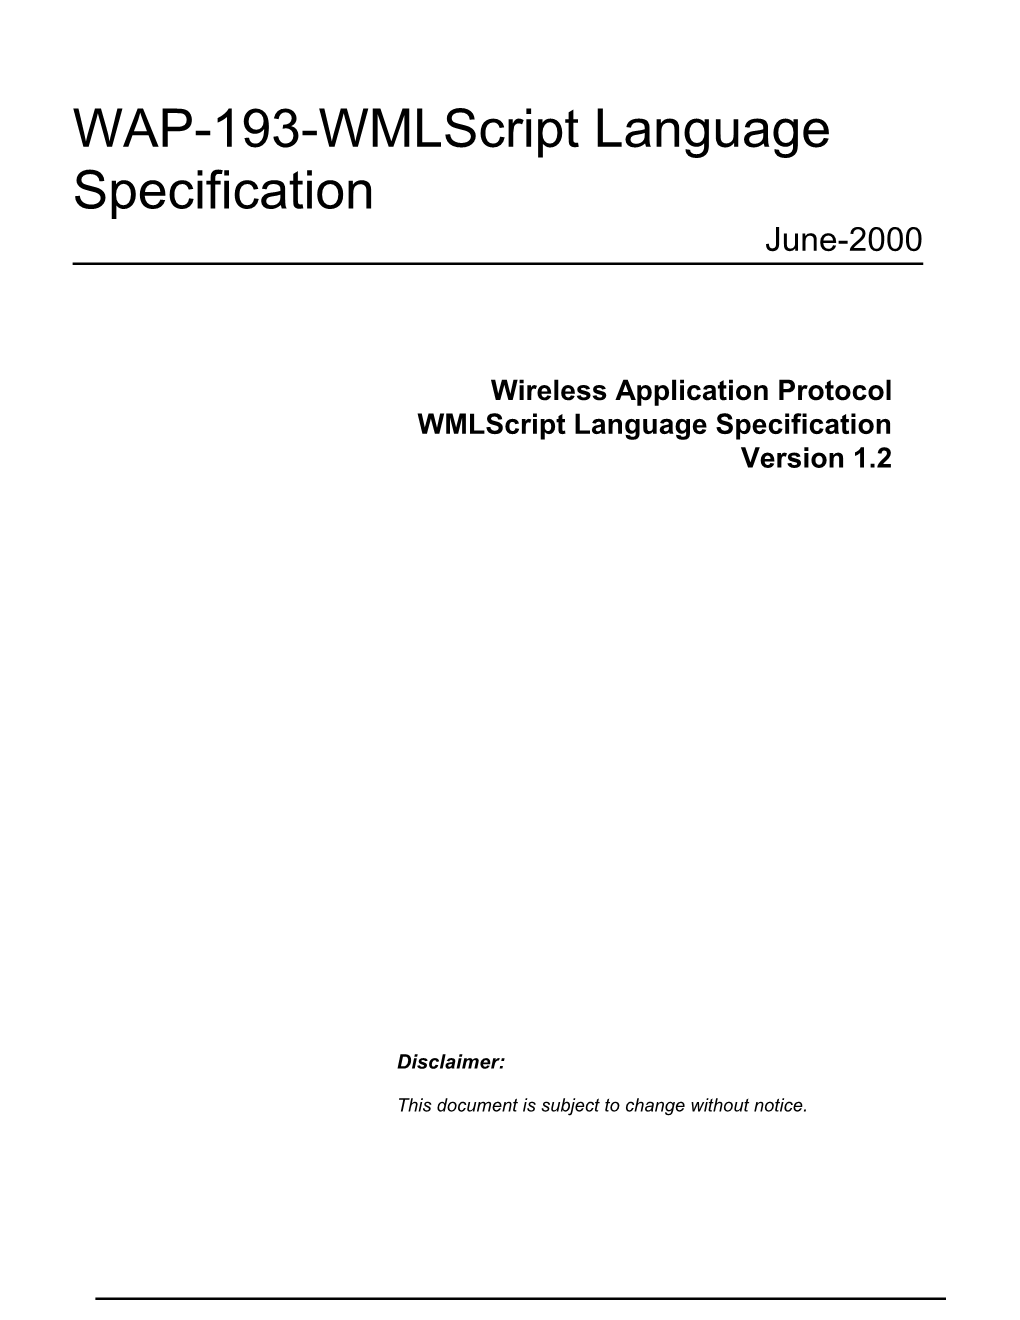 WAP-193-Wmlscript Language Specification June-2000